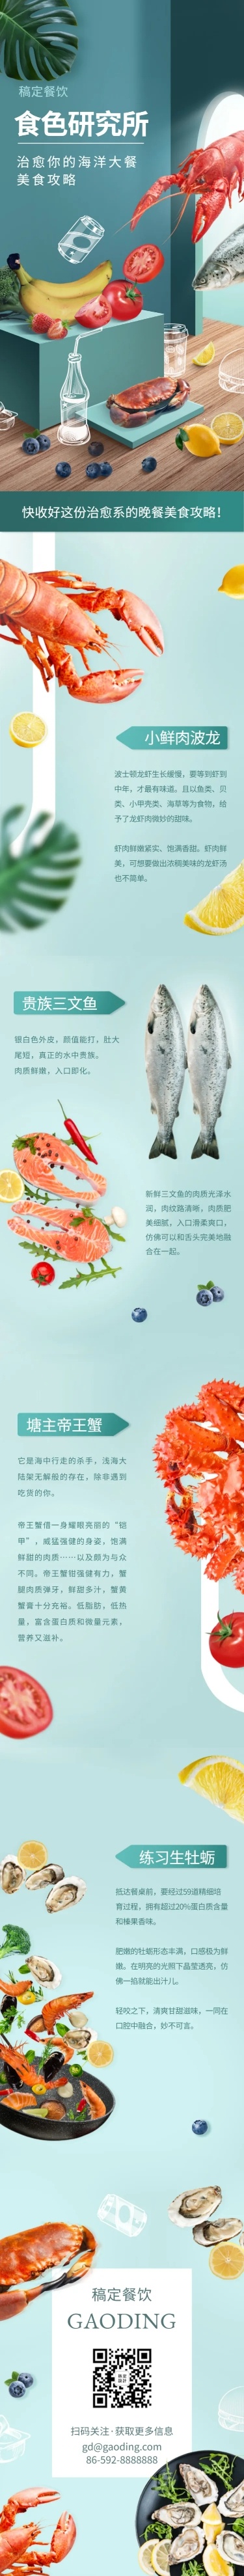 食品生鲜海鲜物种介绍菜单推荐文章长图